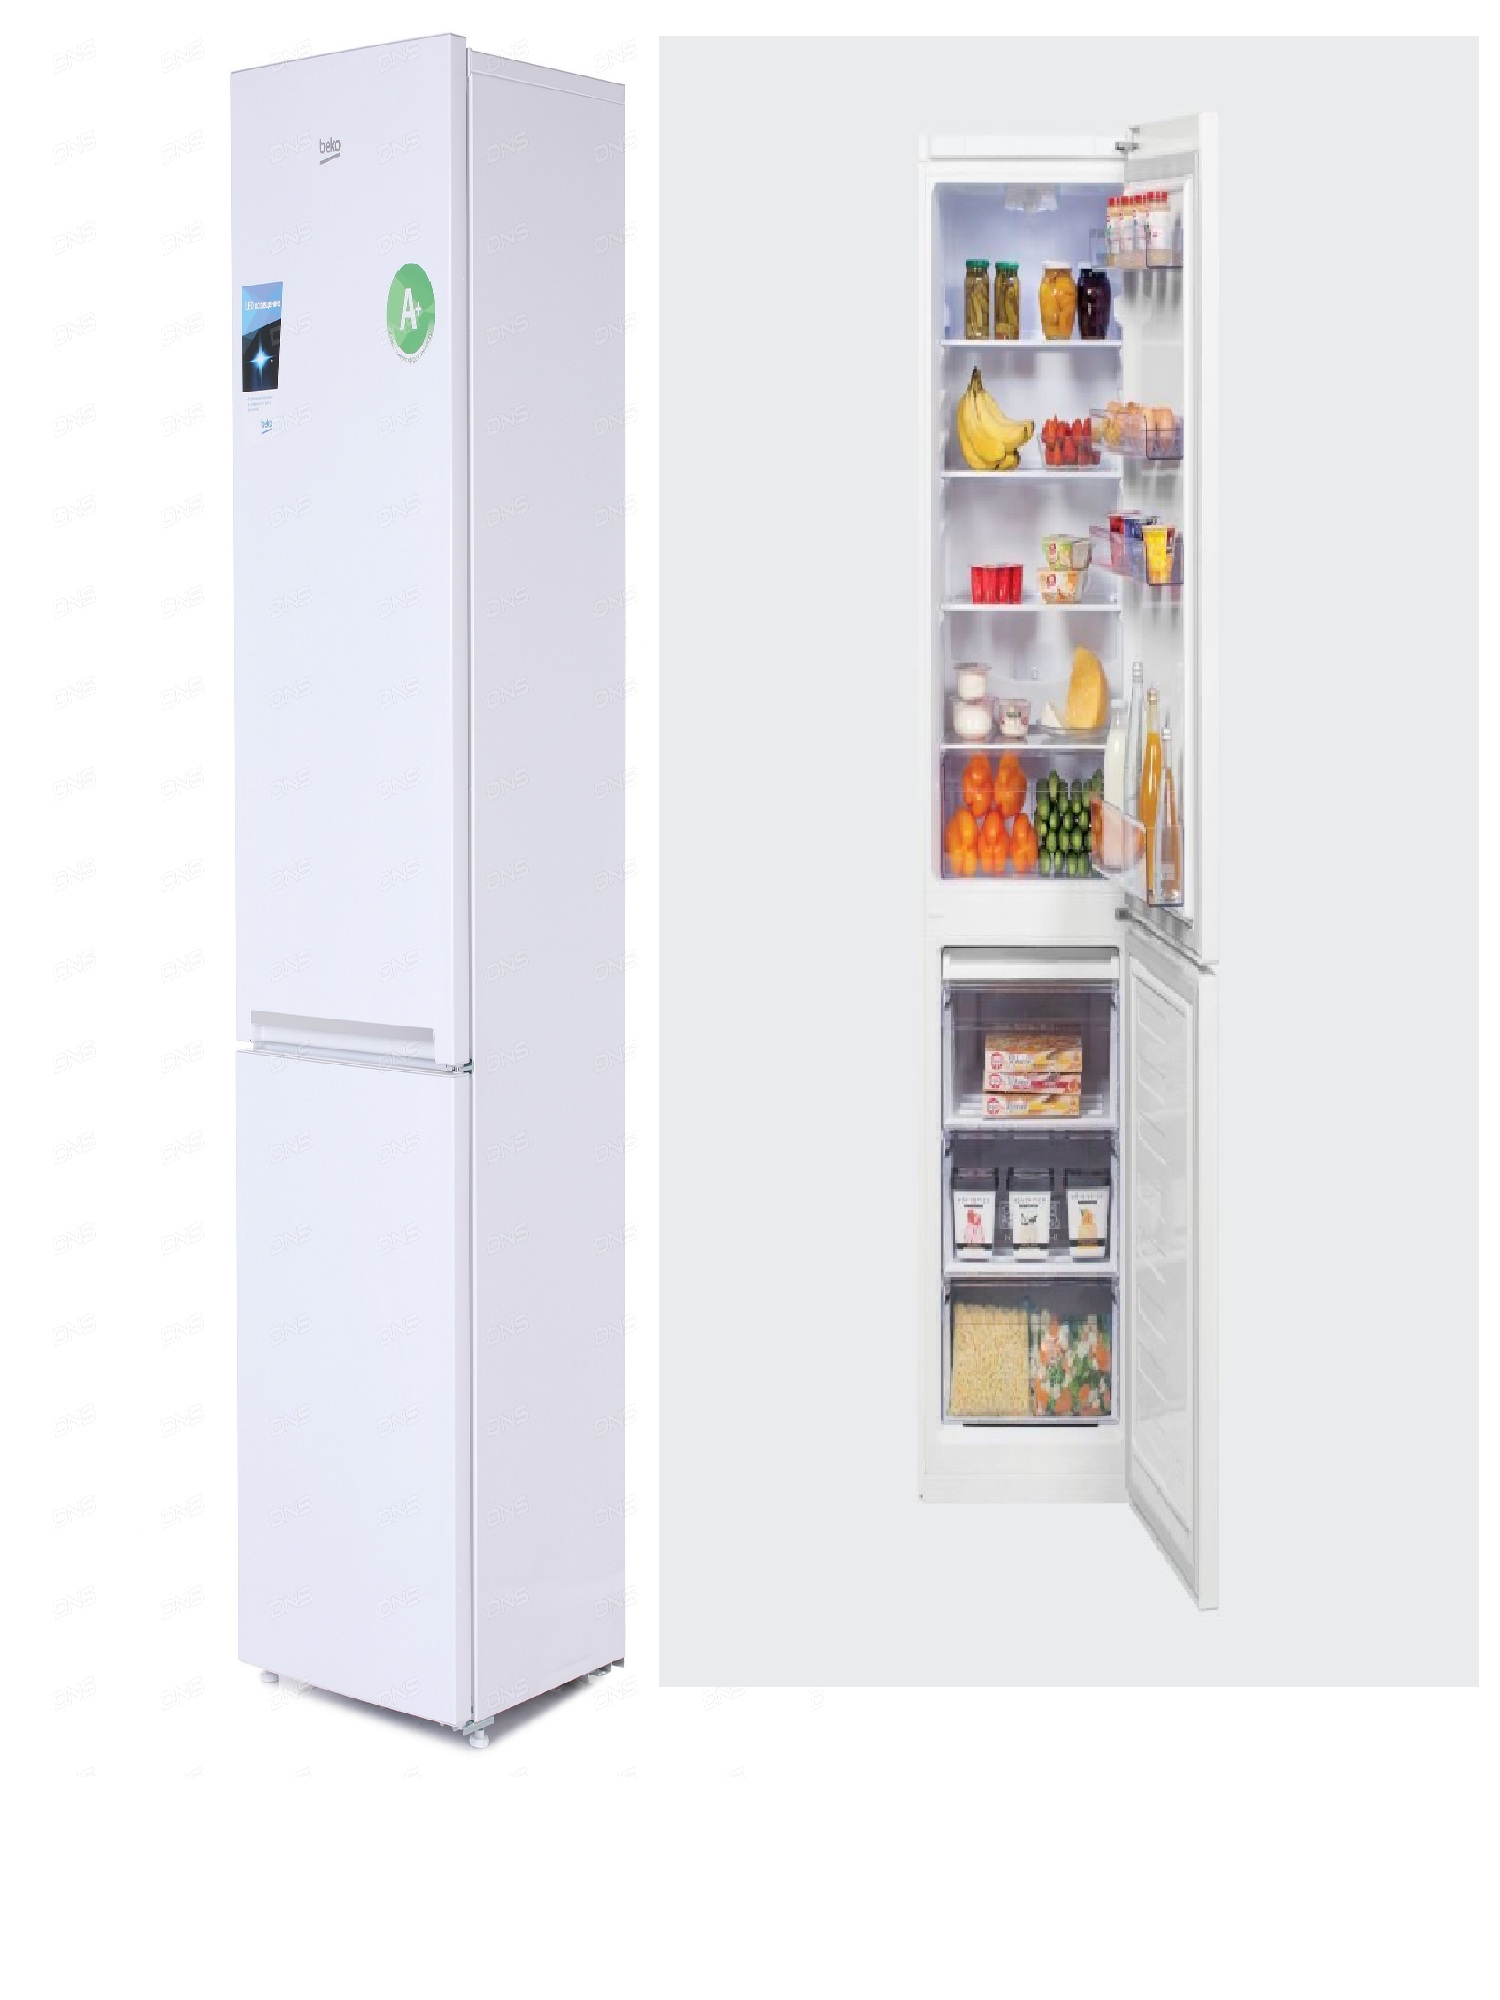 холодильник beko rcsk380m20w, купить в Красноярске холодильник beko rcsk380m20w,  купить в Красноярске дешево холодильник beko rcsk380m20w, купить в Красноярске минимальной цене холодильник beko rcsk380m20w